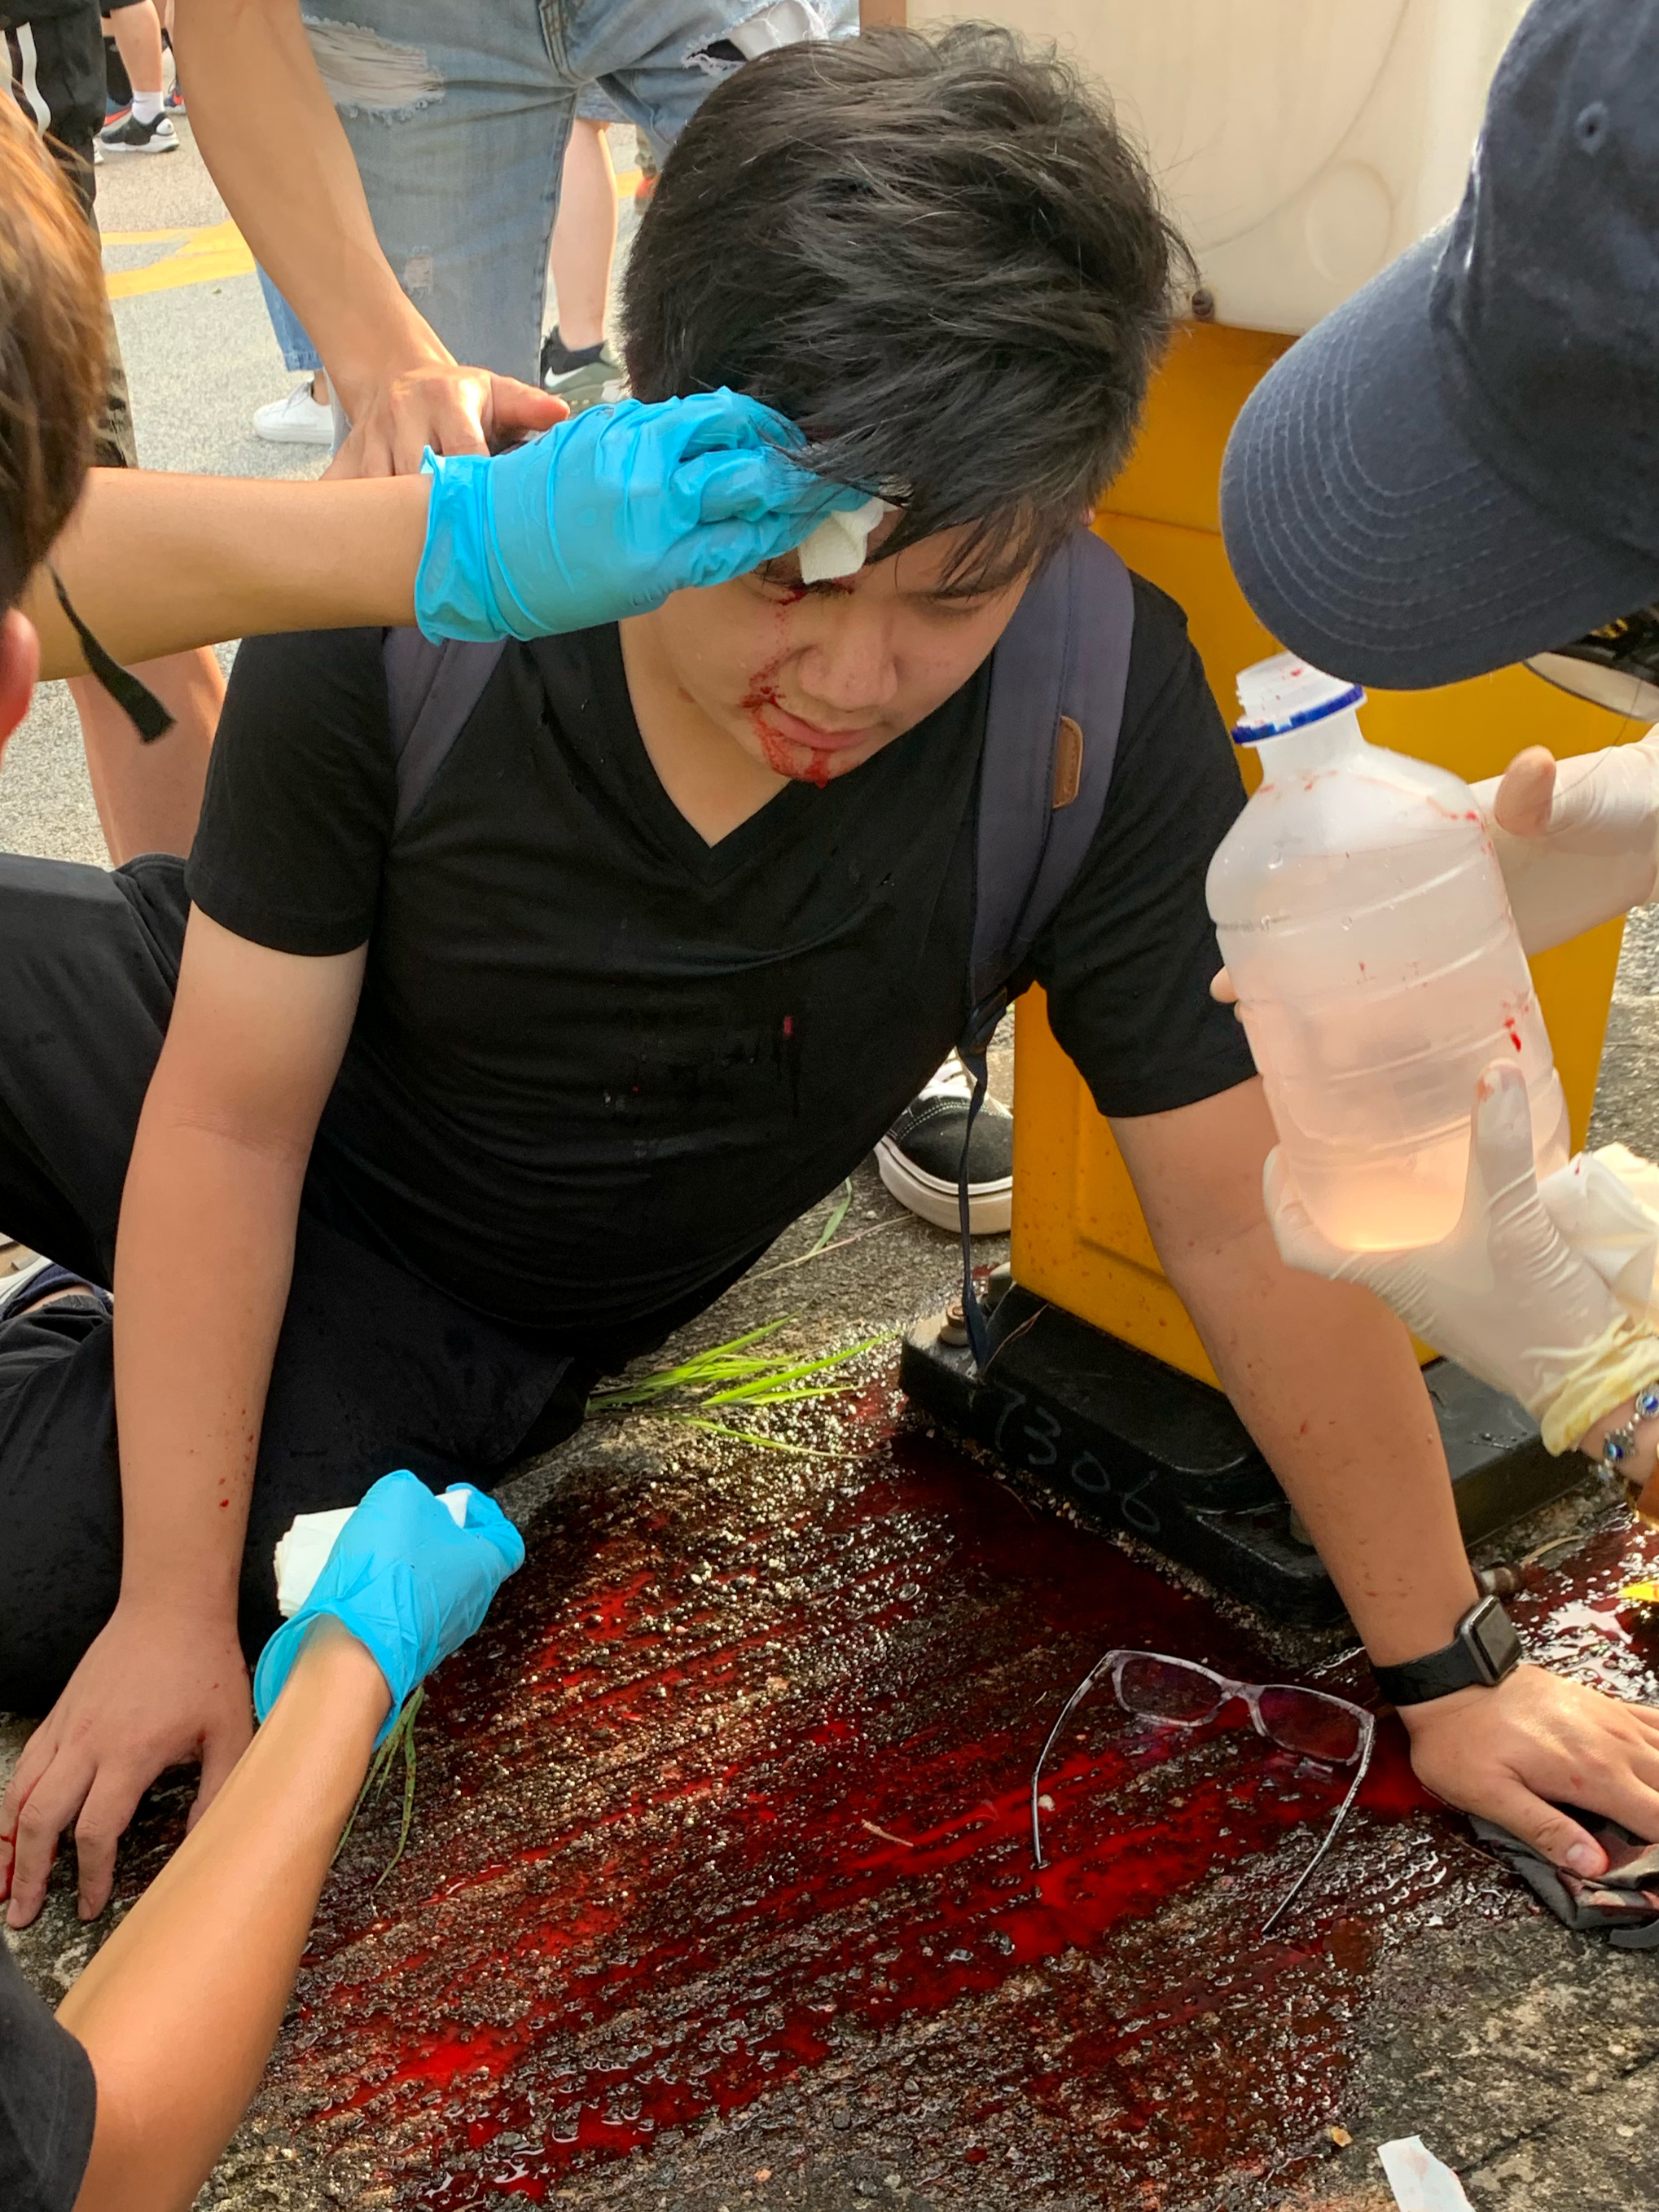 有示威者报称被硬物击中头部受伤流血，地上则留有大量血迹。-路透社-